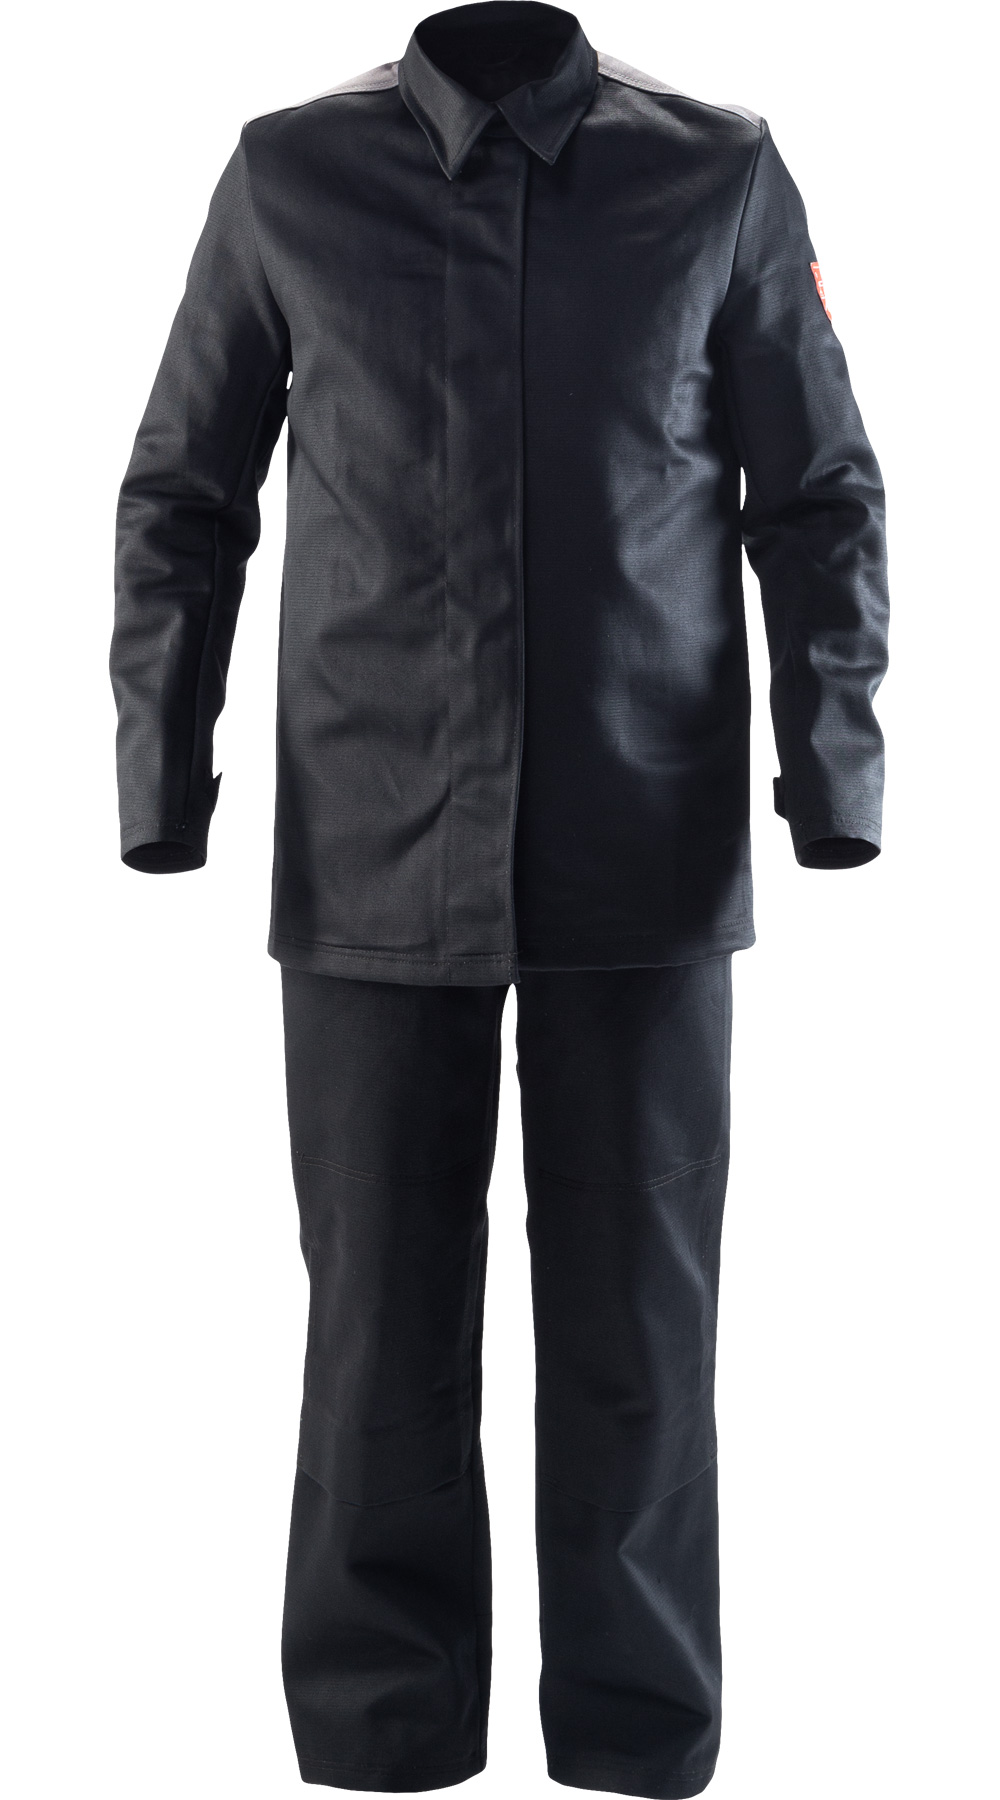 Летний костюм сварщика "ЗЕВС" мужской (куртка и брюки), цвет: черно-серый, ткань Арсенал NEW